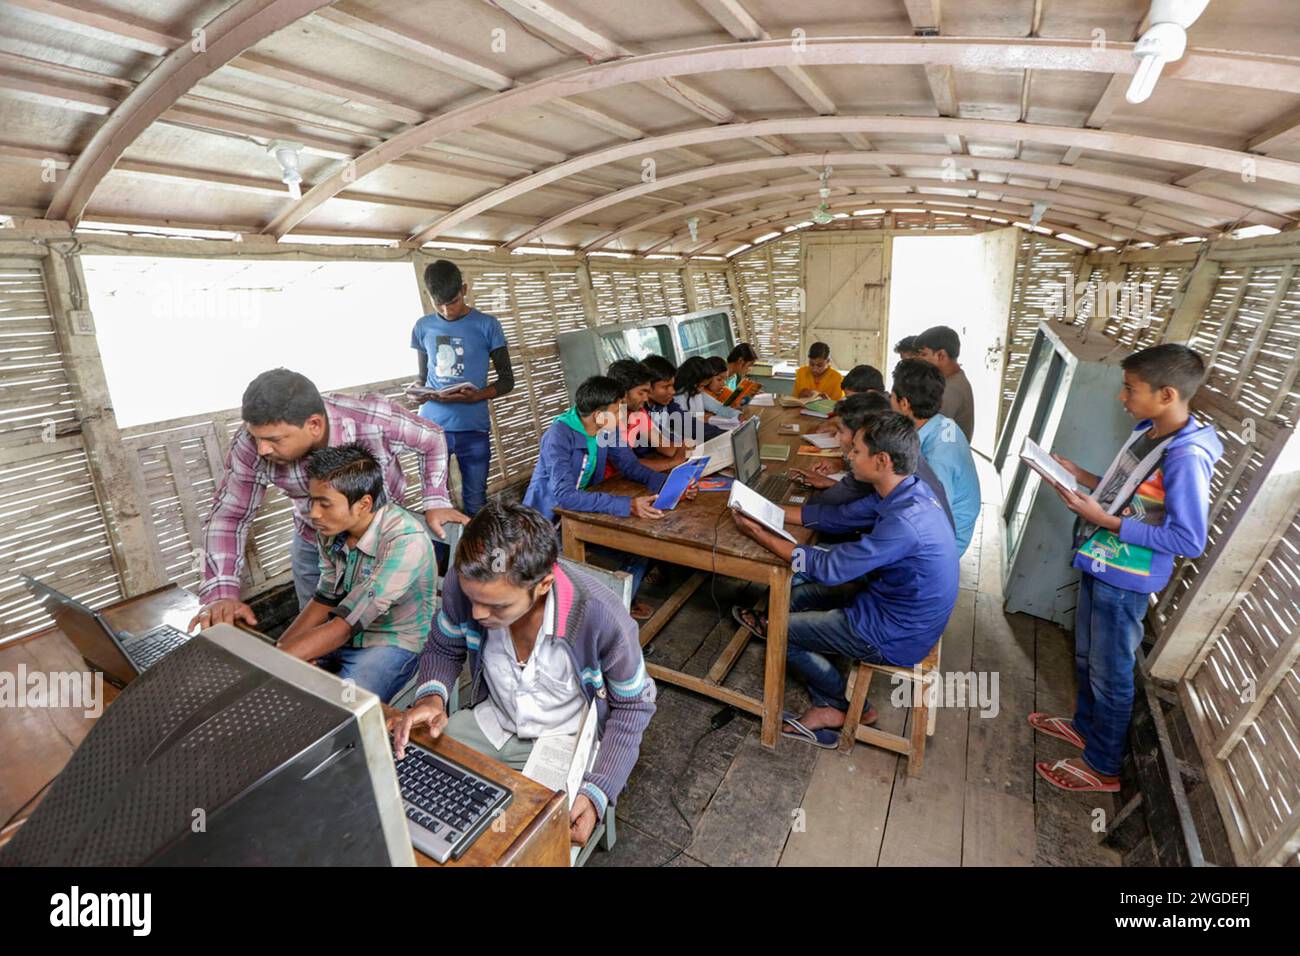 Les élèves utilisent l'ordinateur et lisent des livres à la bibliothèque sur une école de bateau à Poundry, Kolom. Le pays a été inondé à deux reprises en 2007 et 332 écoles ont été détruites et 4 893 écoles ont été endommagées. Shidhulai exploite une flotte d'écoles flottantes, de bibliothèques, de cliniques de santé, d'ateliers solaires et de centres de formation flottants avec accès Internet sans fil, desservant près de 97 000 familles dans les régions sujettes aux inondations. Les bateaux eux-mêmes sont équipés de panneaux solaires qui alimentent les ordinateurs, les lumières et le matériel médical. Singra, Natore, Bangladesh. Banque D'Images